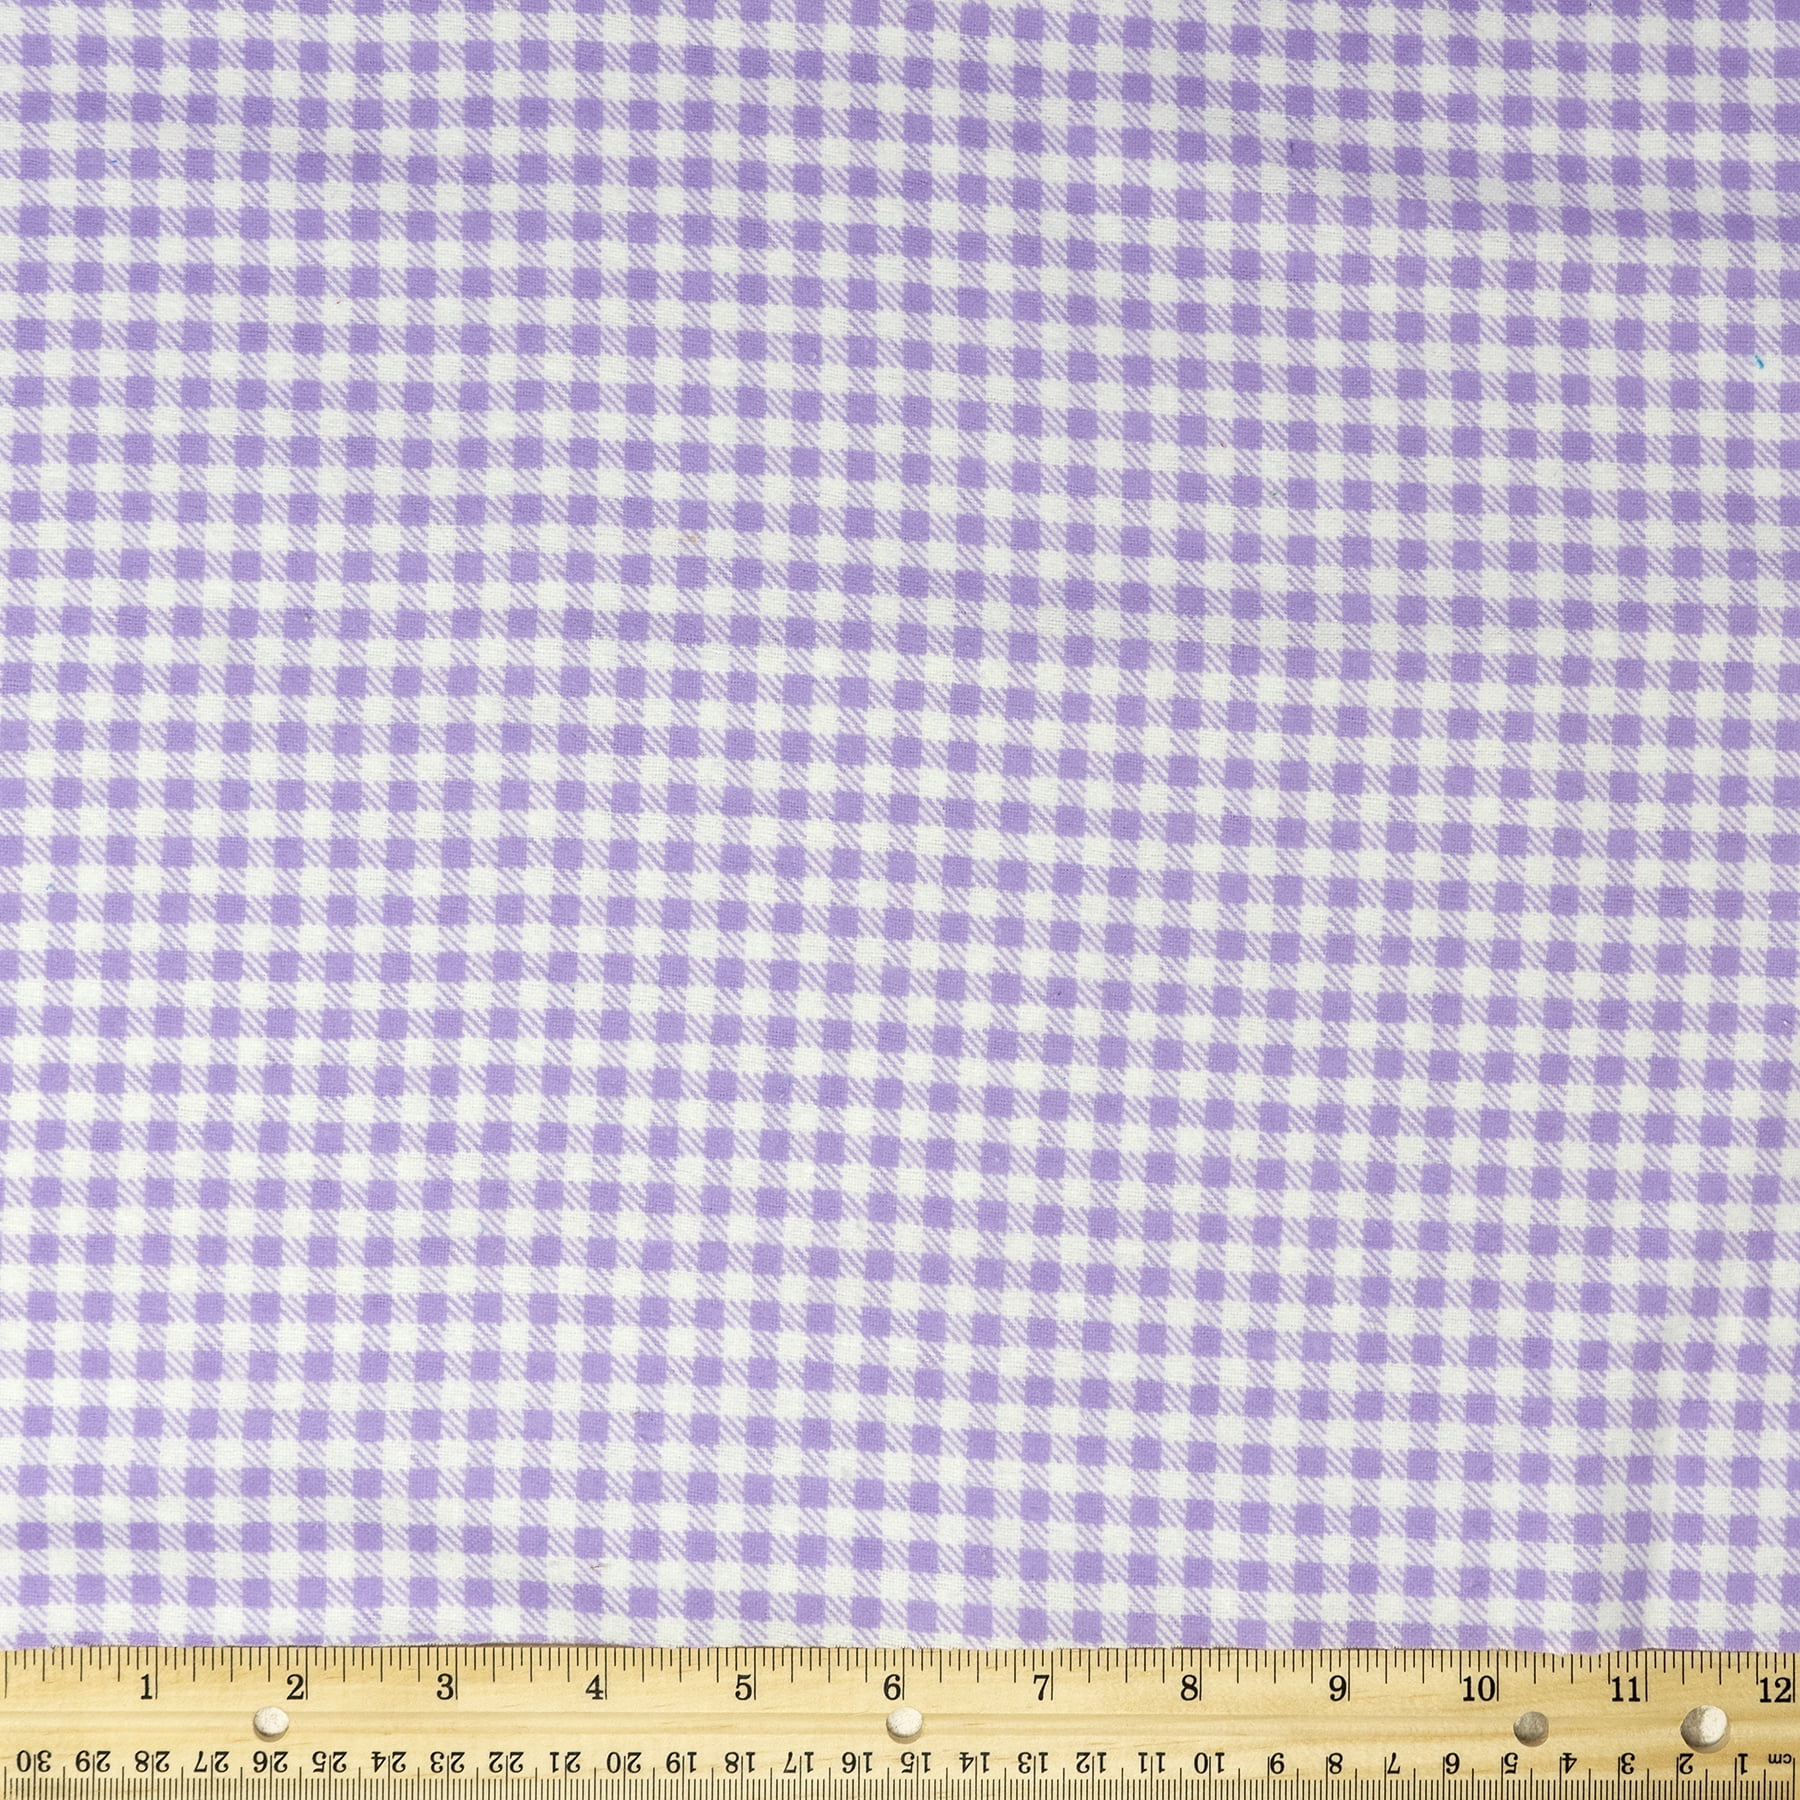 LITTLEST PET SHOP 1/2 YD L x 43"W LAVENDER NEW cotton fabric.